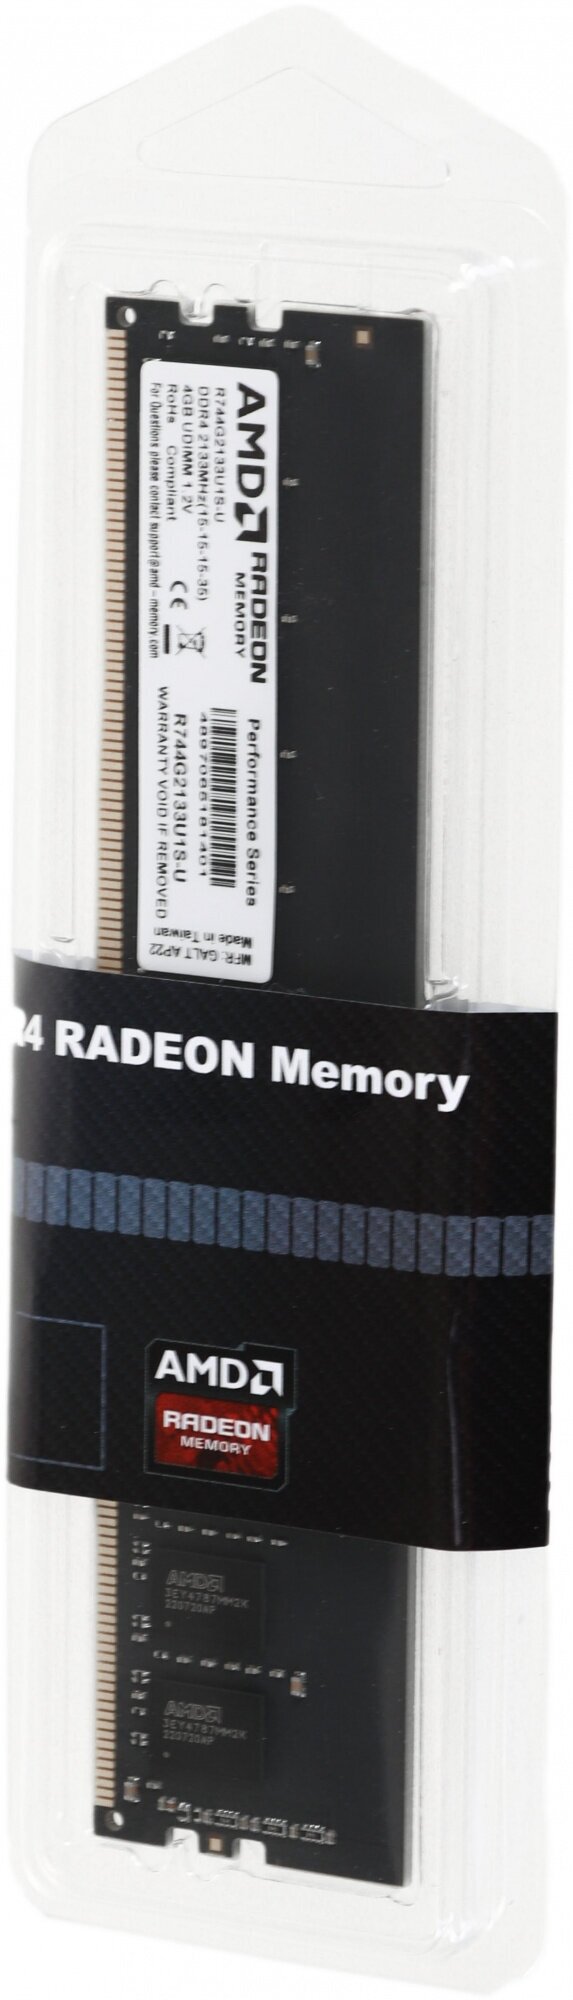 DIMM DDR4, 4ГБ, AMD - фото №13